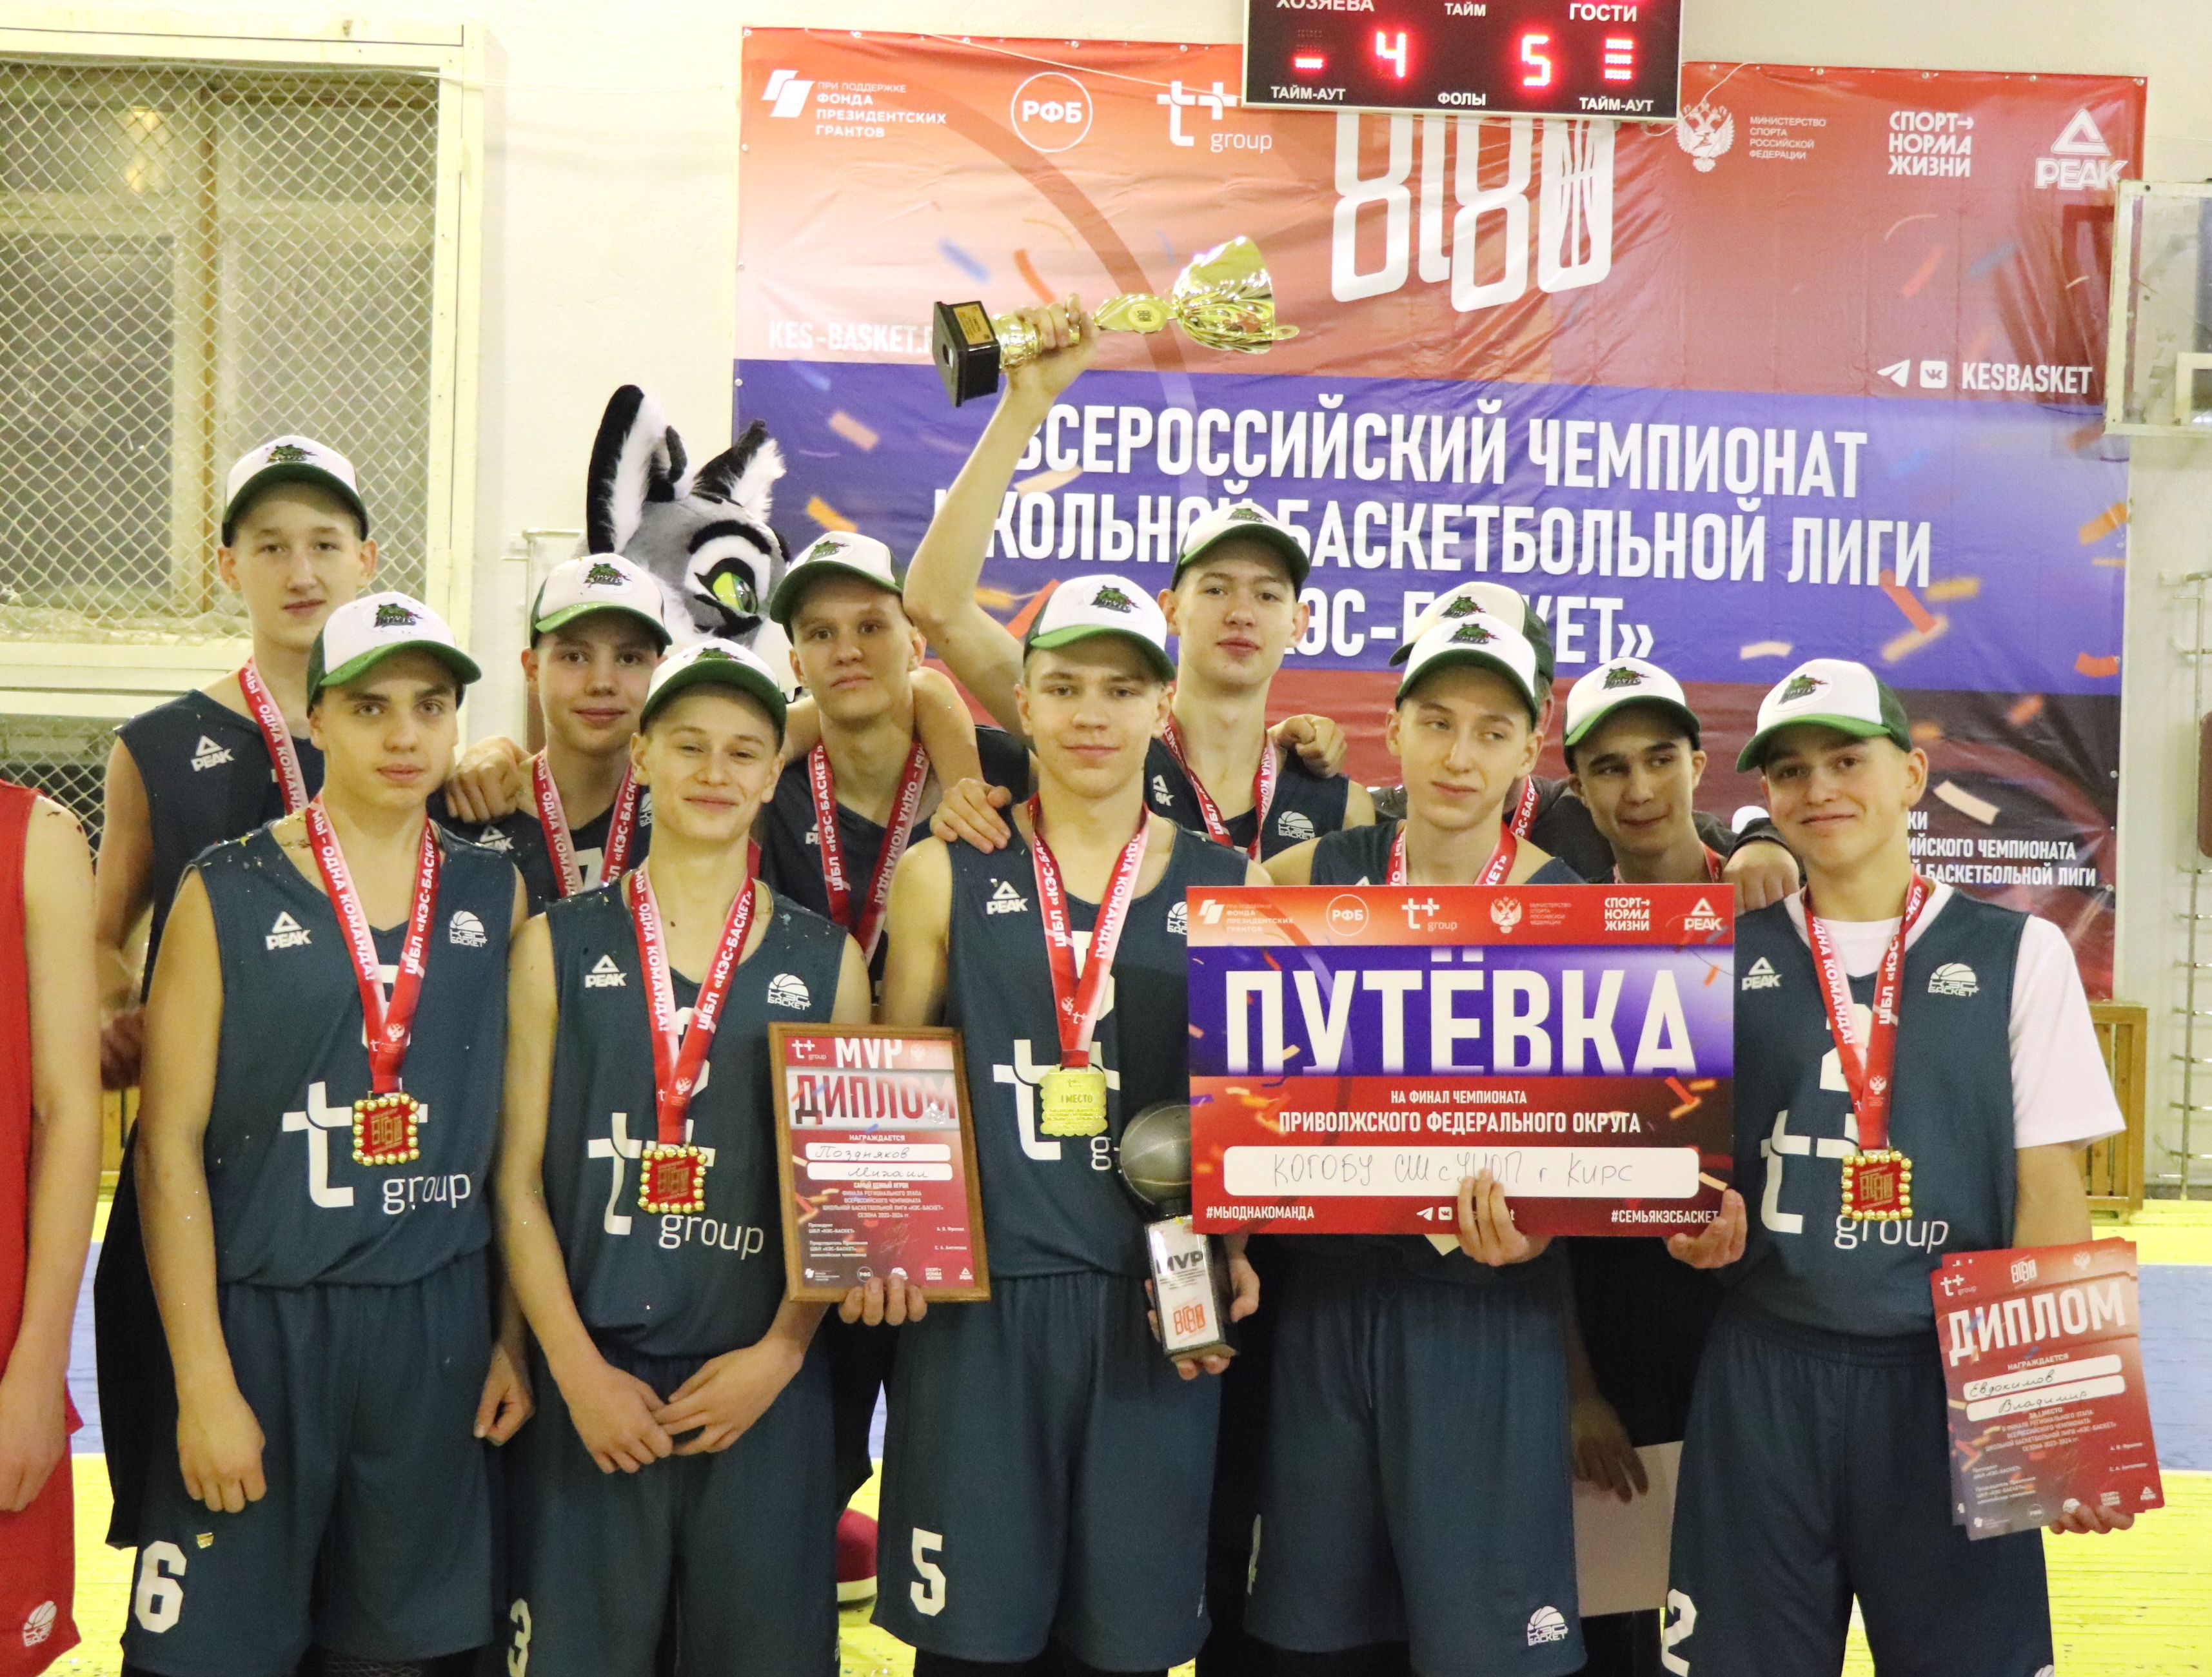 Кирове определены победители регионального этапа Чемпионата ШБЛ 